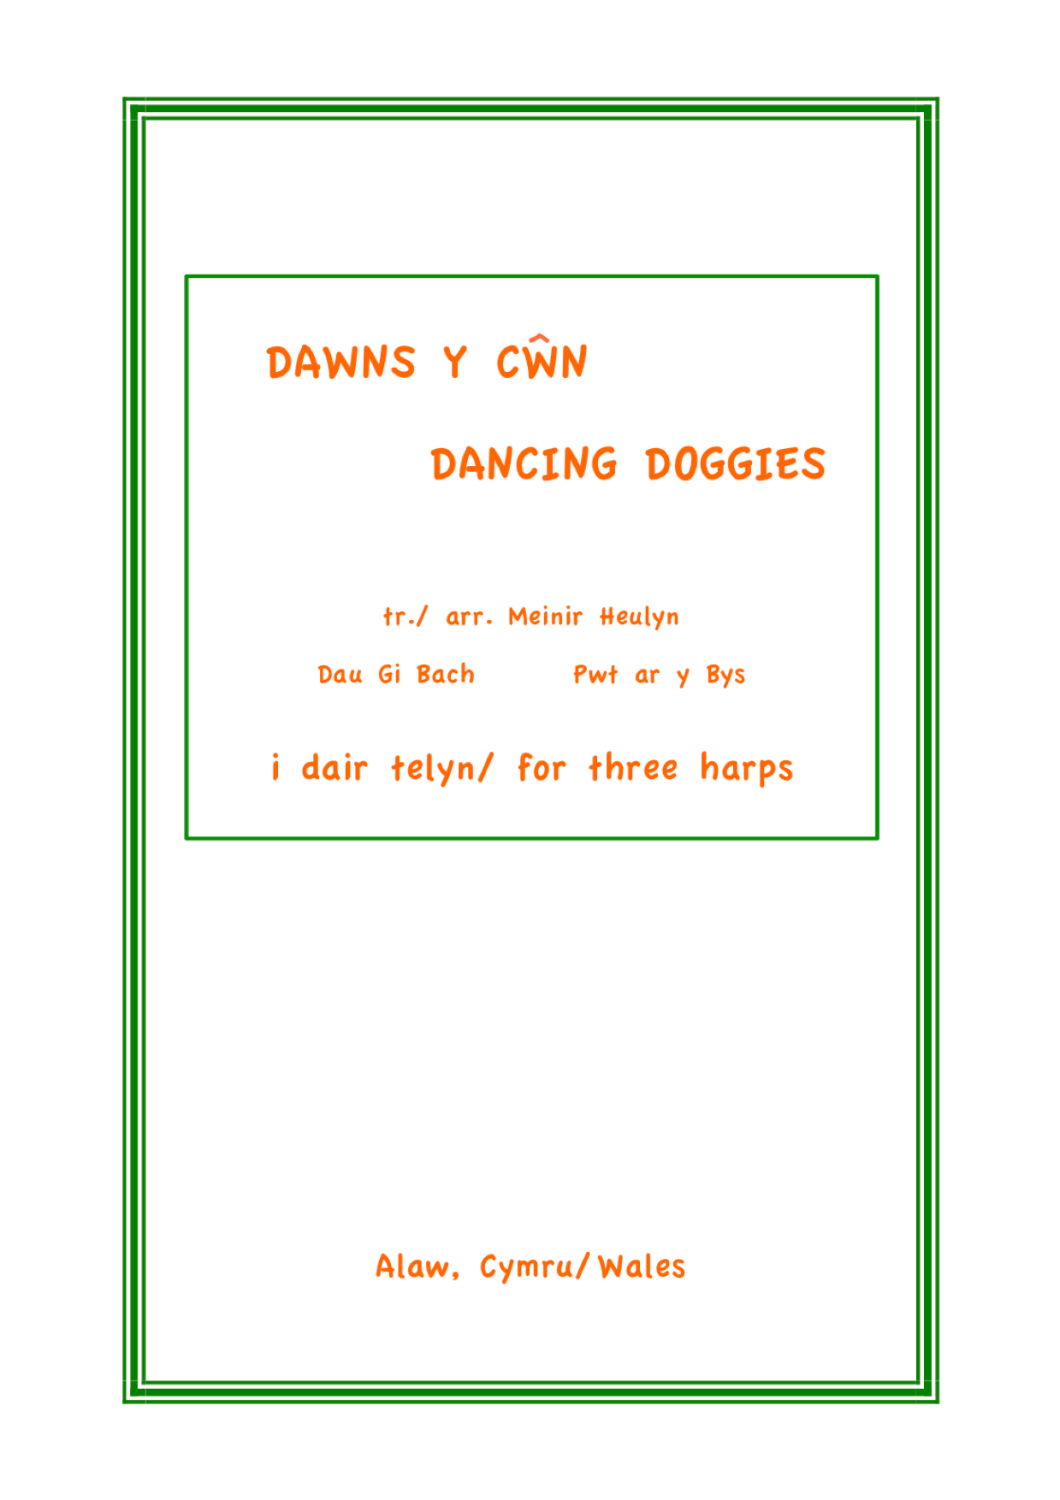 Dawns y Cwn - Dancing Doggies are Menir Heulyn